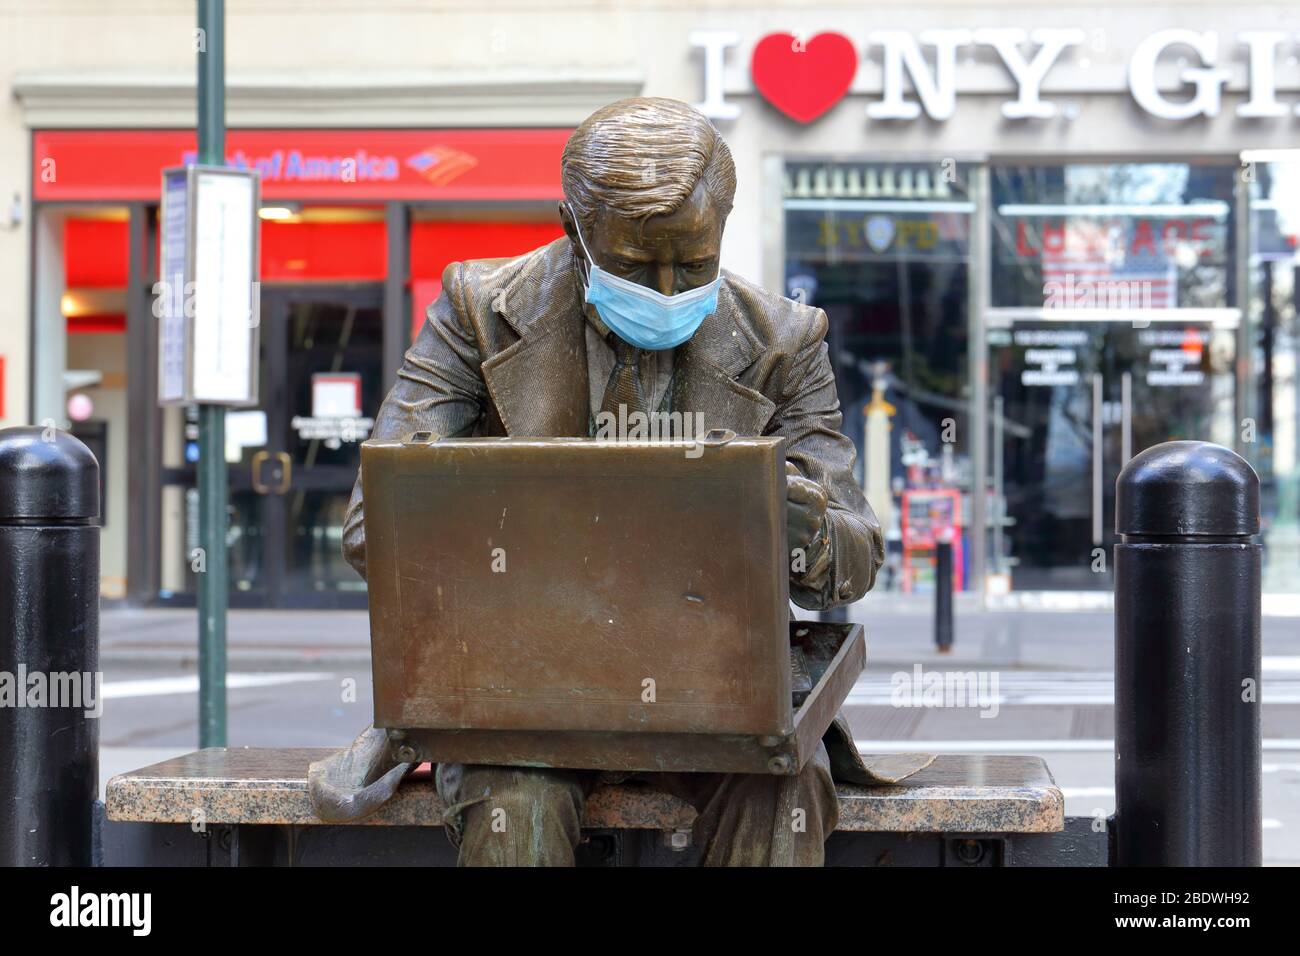 La statua dell'uomo d'affari 'Double Check' con una maschera facciale come simbolo dell'attuale pandemia del coronavirus COVID-19 a New York, NY. Foto Stock